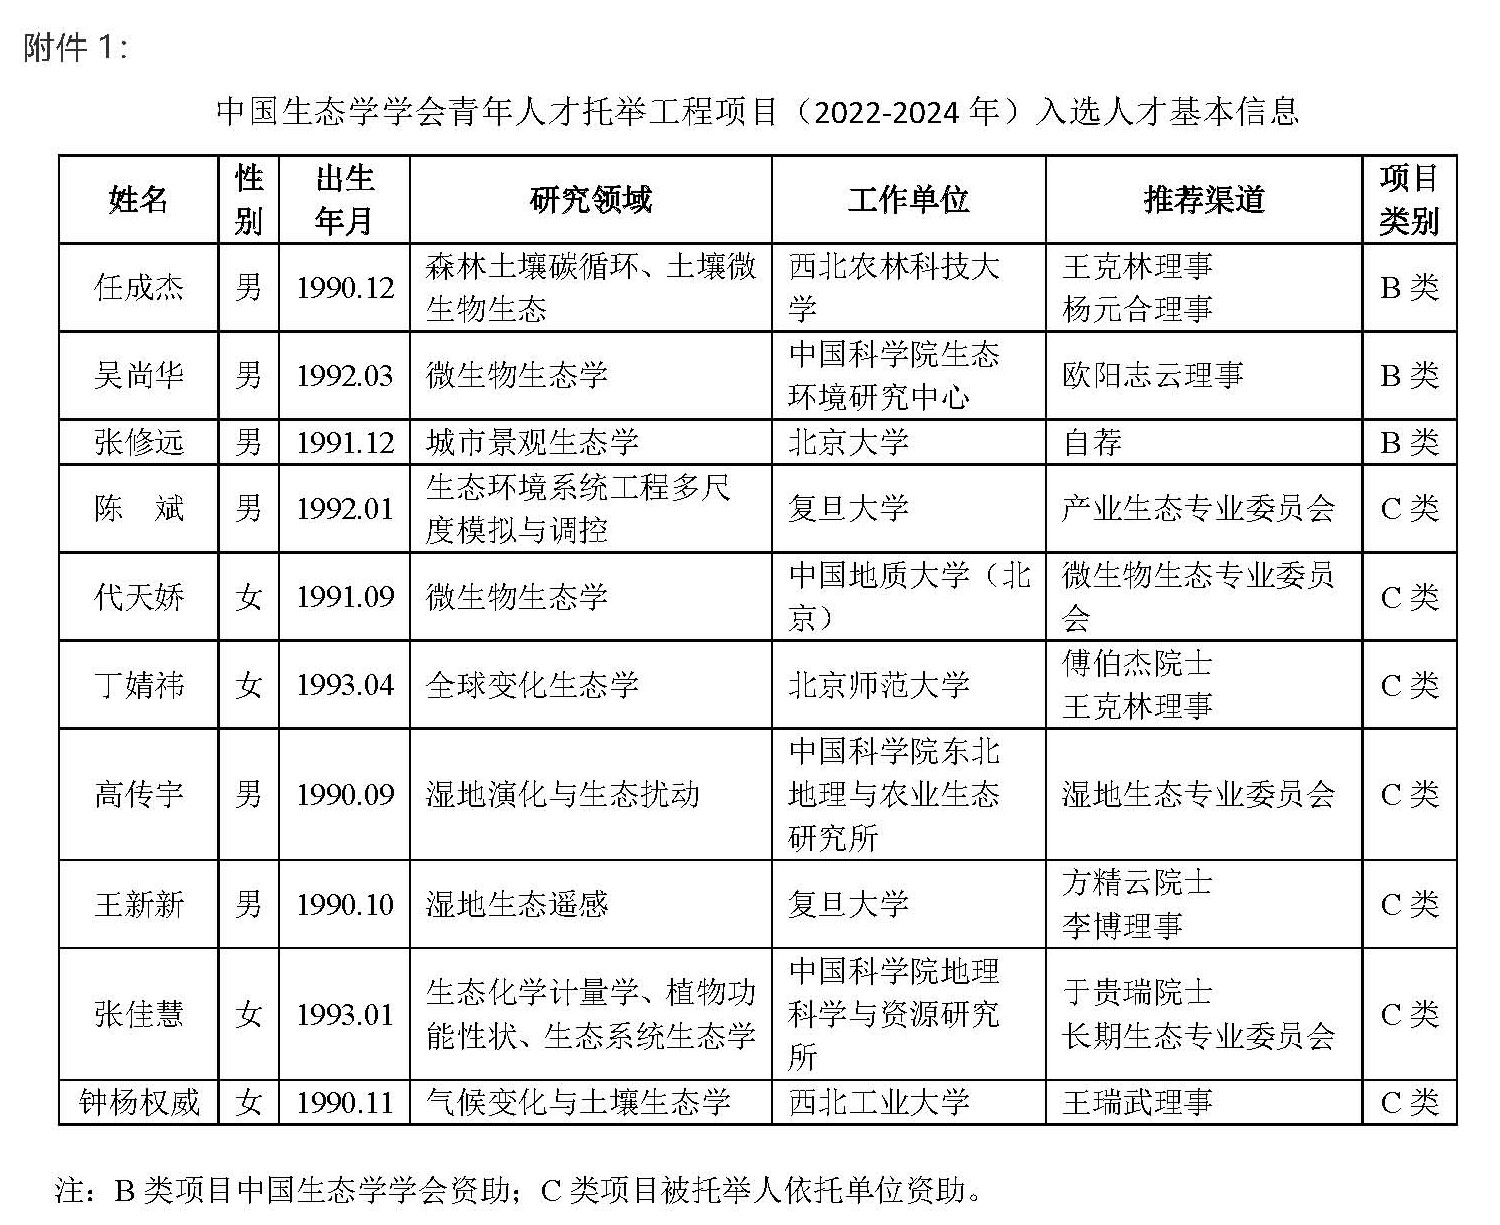 中国生态学学会关于中国生态学学会青年人才托举工程项目（2022-2024年）人才遴选结果的公示5_页面_2 (2).jpg